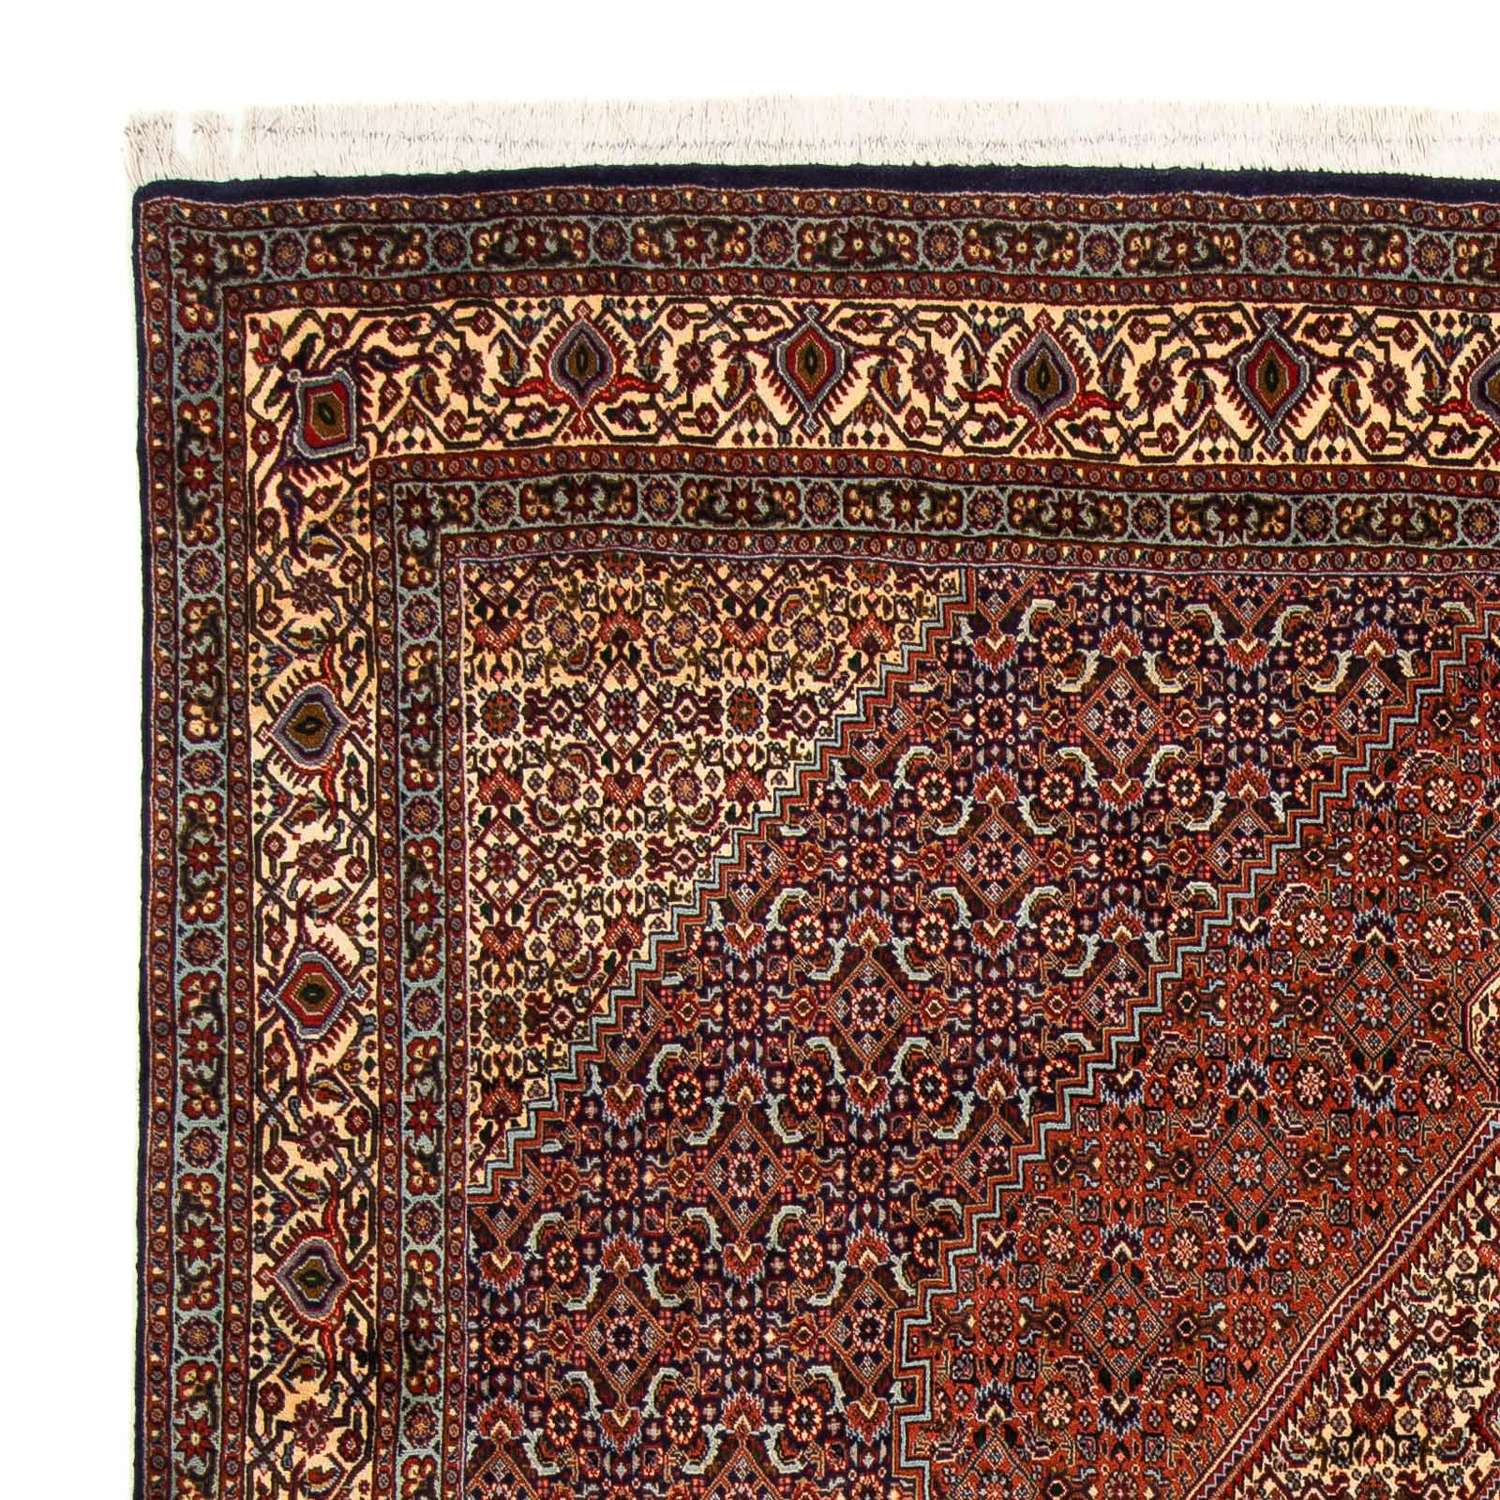 Perzisch tapijt - Bijar - 222 x 203 cm - bruin